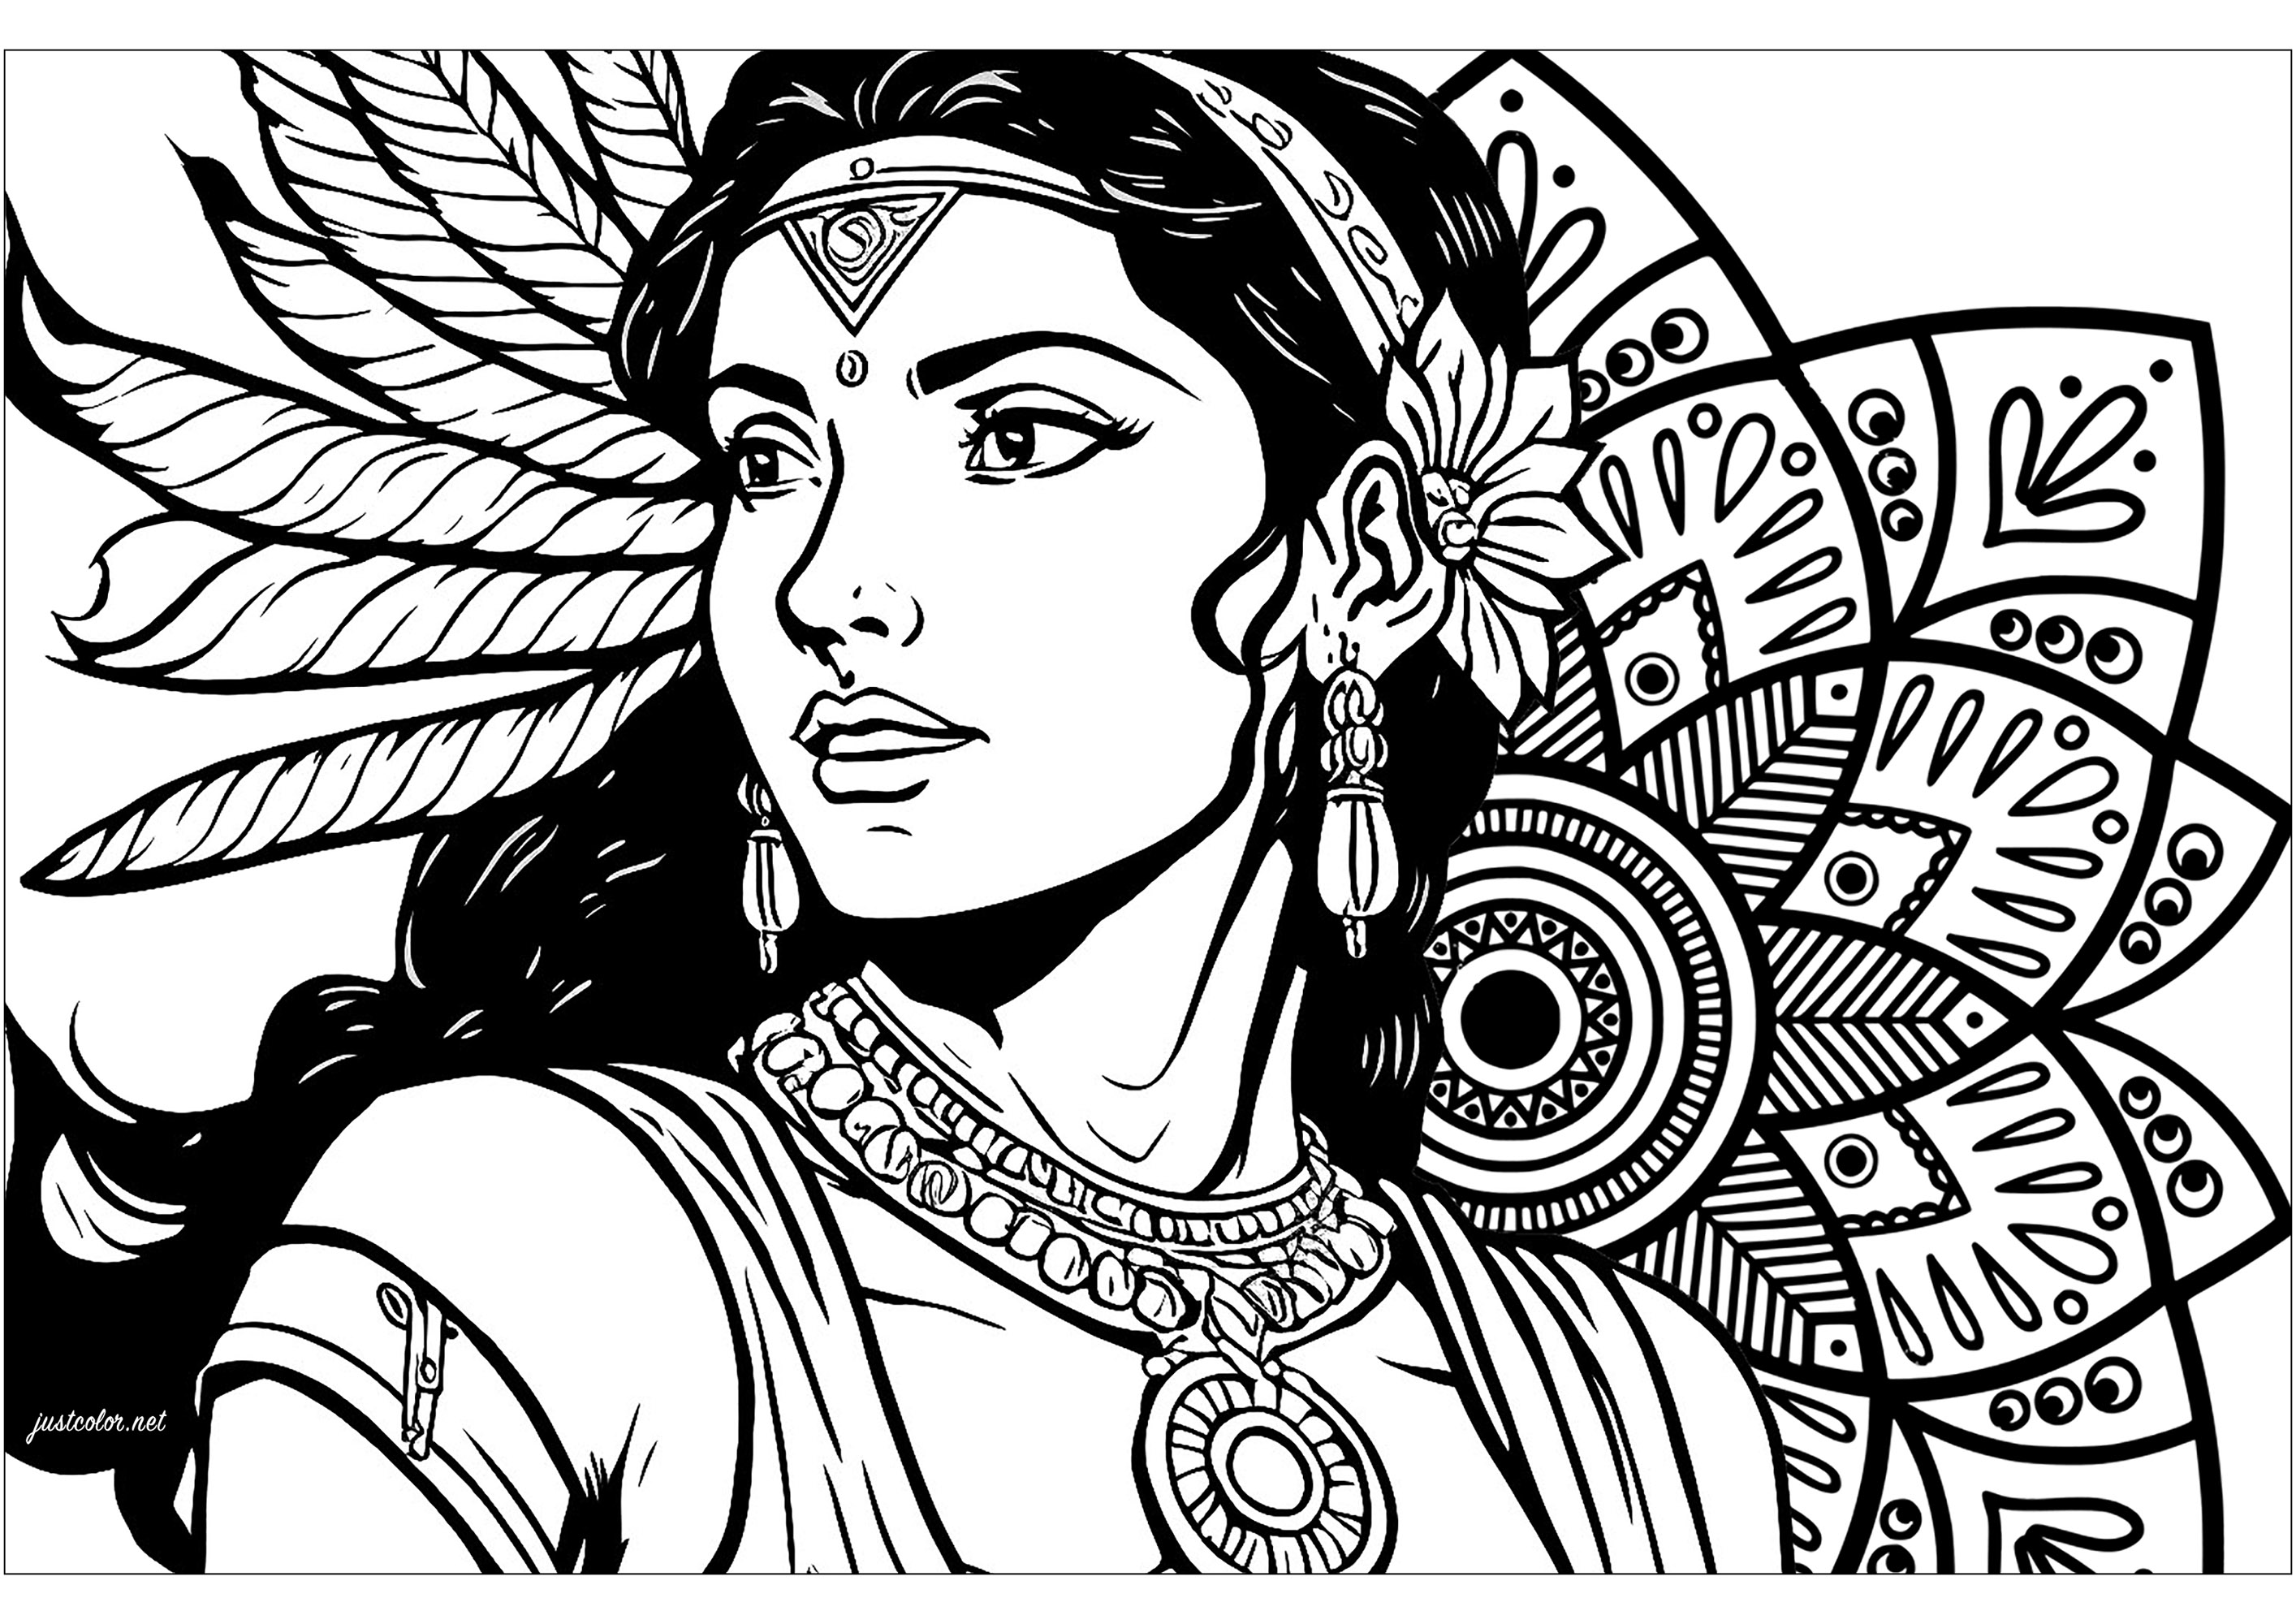 Magnifique coloriage d'une Indienne et d'un Mandala inspiré par les motifs indiens. Ce dessin de cette Indienne au regard perçant nous rappelle la force intérieure qui sommeille en nous, tandis que le mandala inspiré par les motifs indiens symbolise l'harmonie universelle, invitant à la paix intérieure.